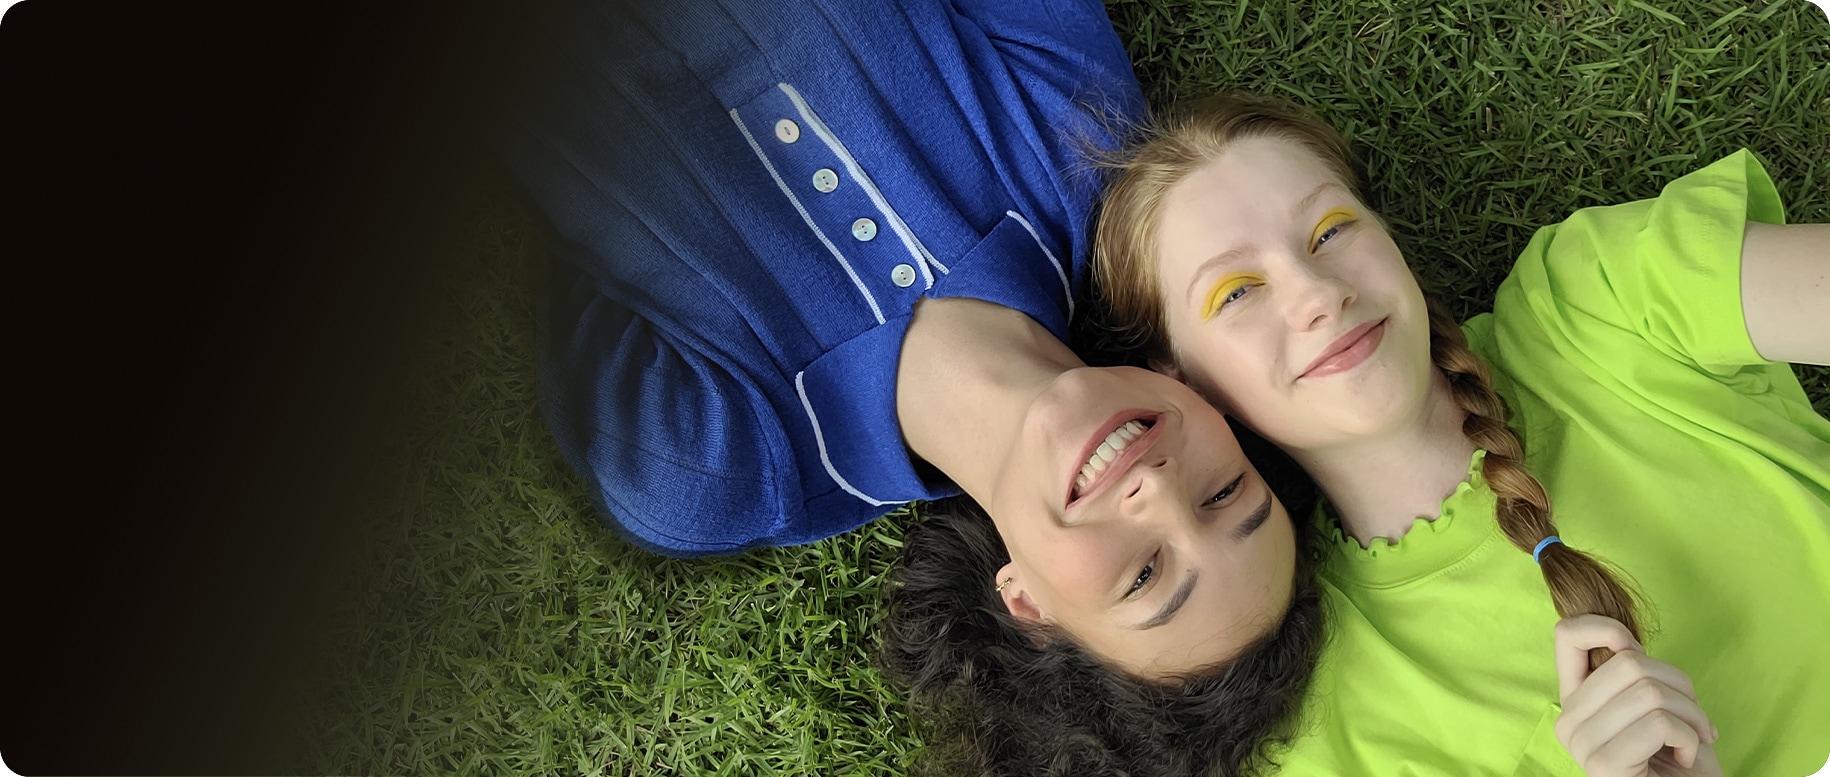 Una vista aérea de dos mujeres tendidas una al lado de la otra sobre la hierba. La mujer de la izquierda lleva una camisa azul con cuello, mientras que la mujer de la derecha lleva una camiseta verde lima. Sus cabezas se presionan juntas desde extremos opuestos. Ambos están sonriendo a la cámara.